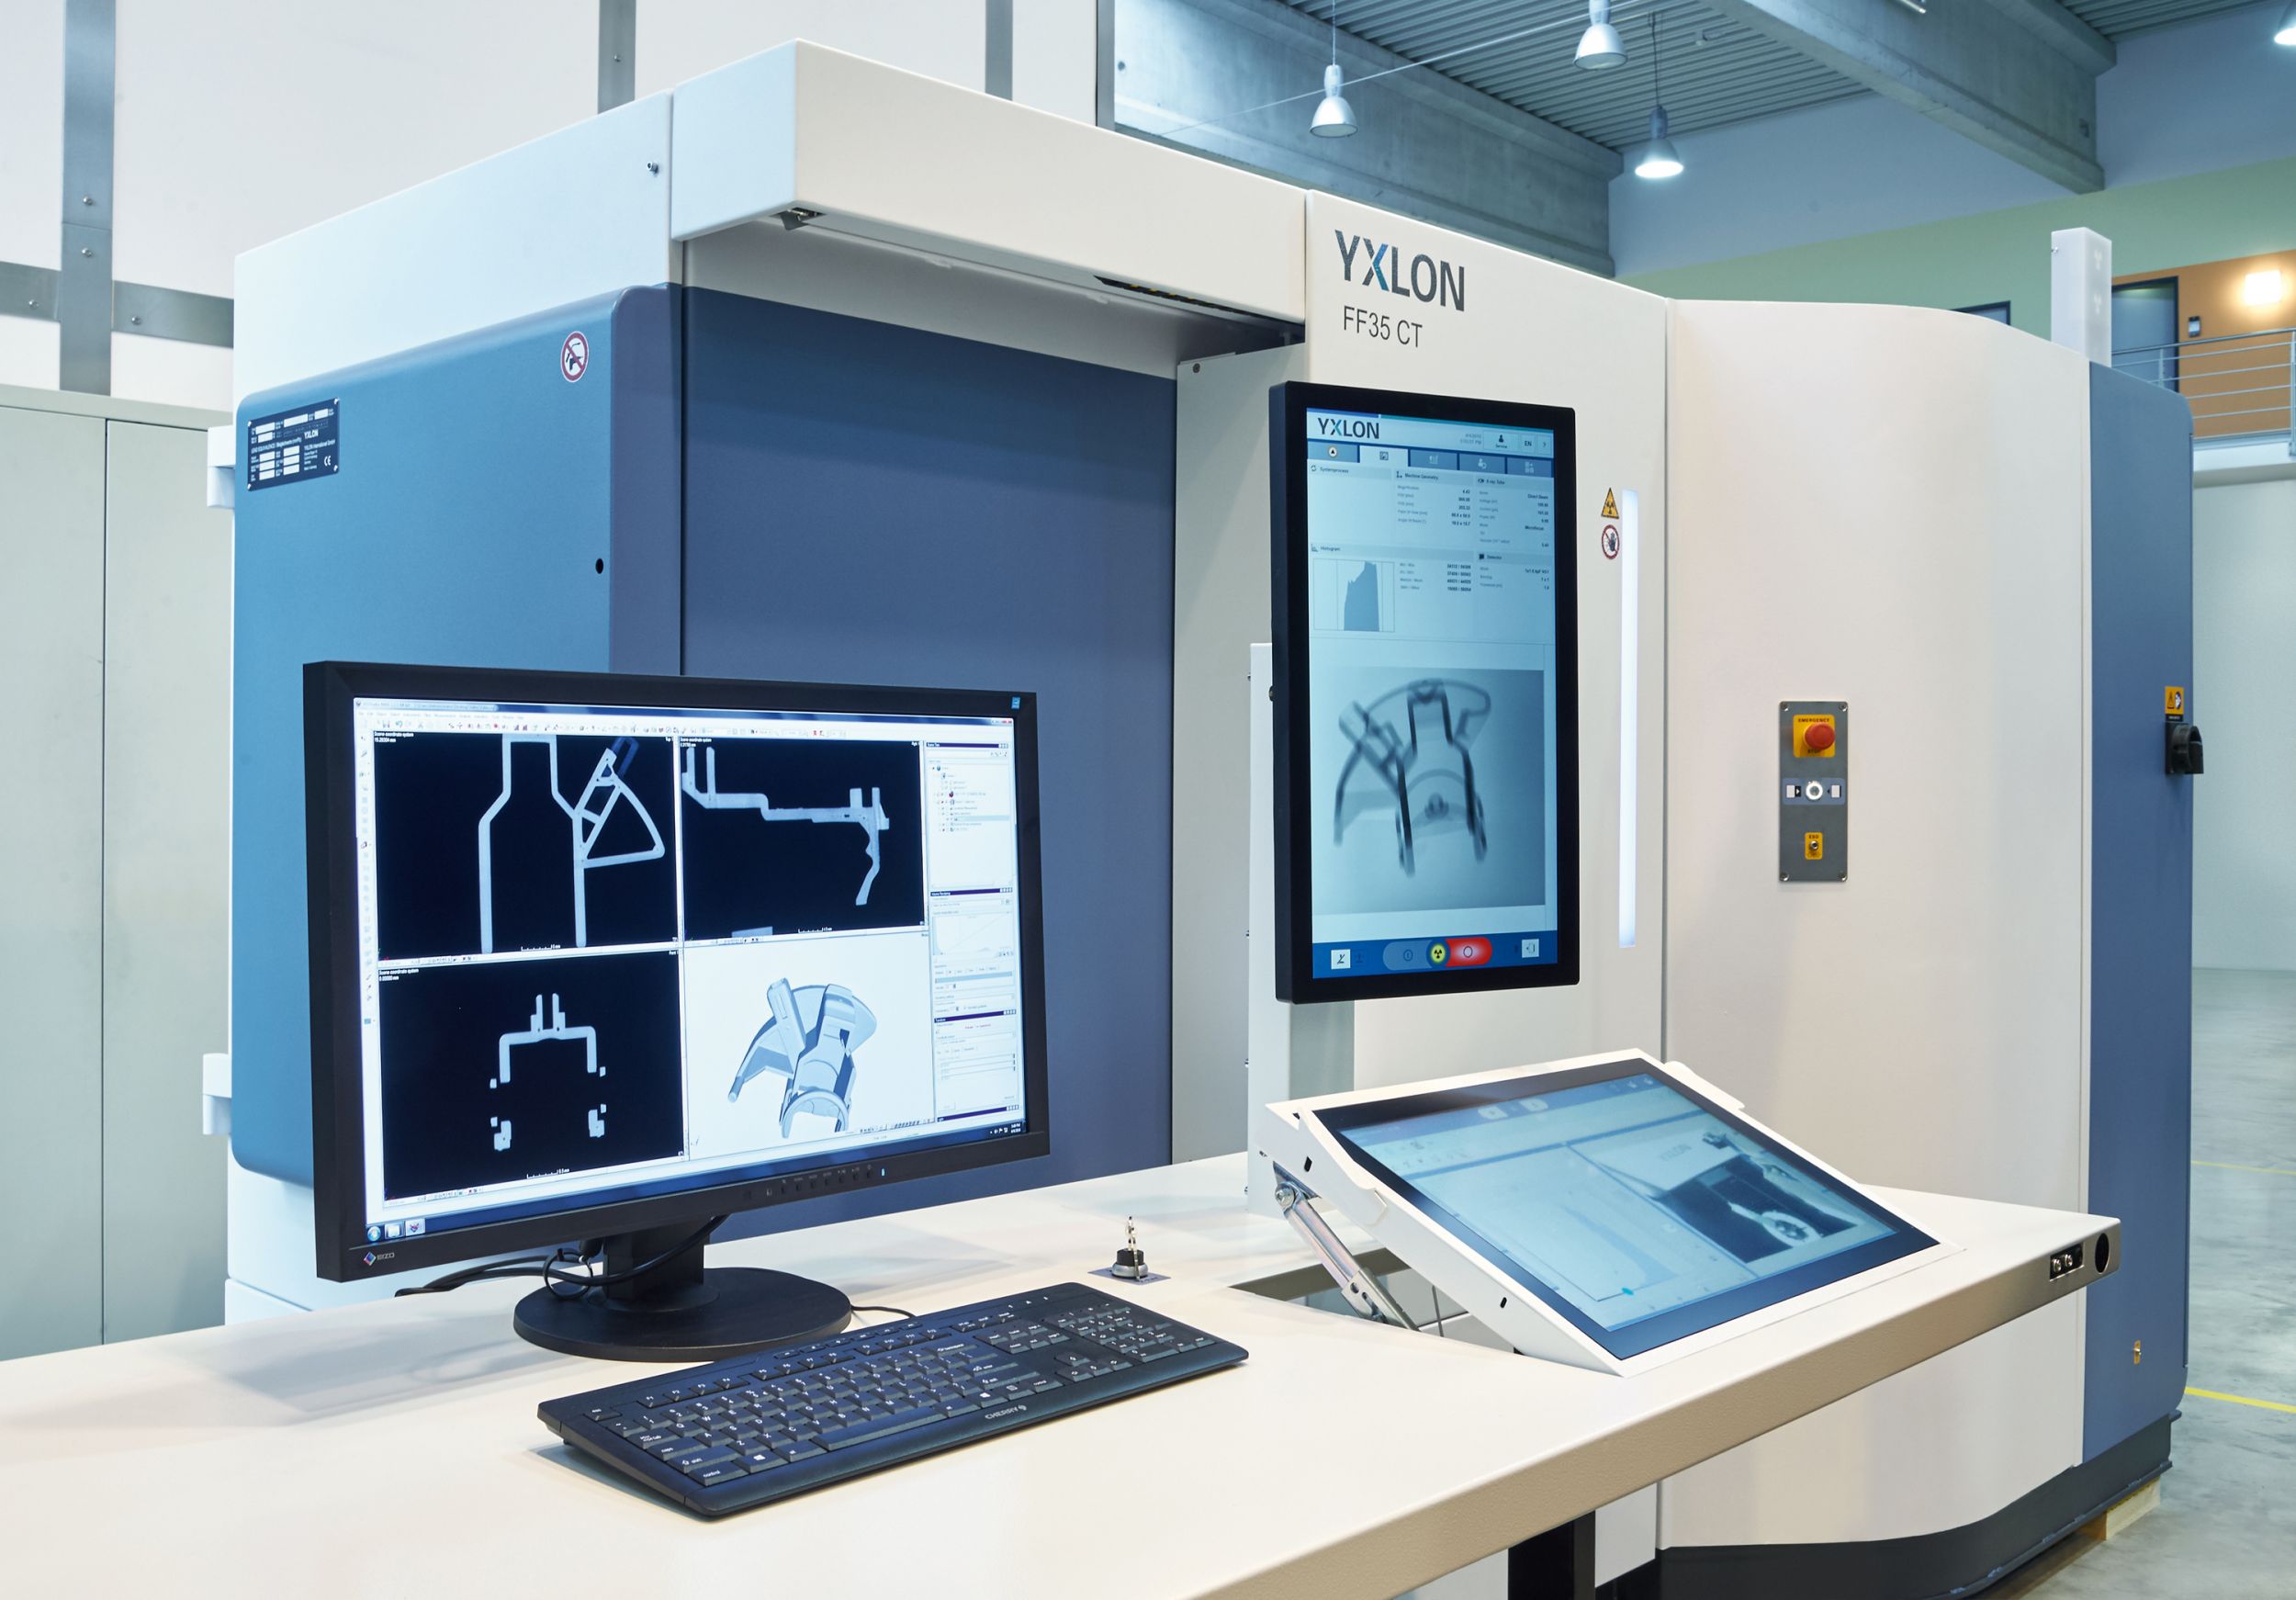 Zwei ergonomisch angeordnete Monitore (rechts) mit Touch-Funktion und intuitiver Bedienerführung dank der Software-Plattform Geminy ermöglichen beste Prüfergebnisse auch für Anwender ohne CT-Expertenwissen. (Bild: Yxlon International GmbH)